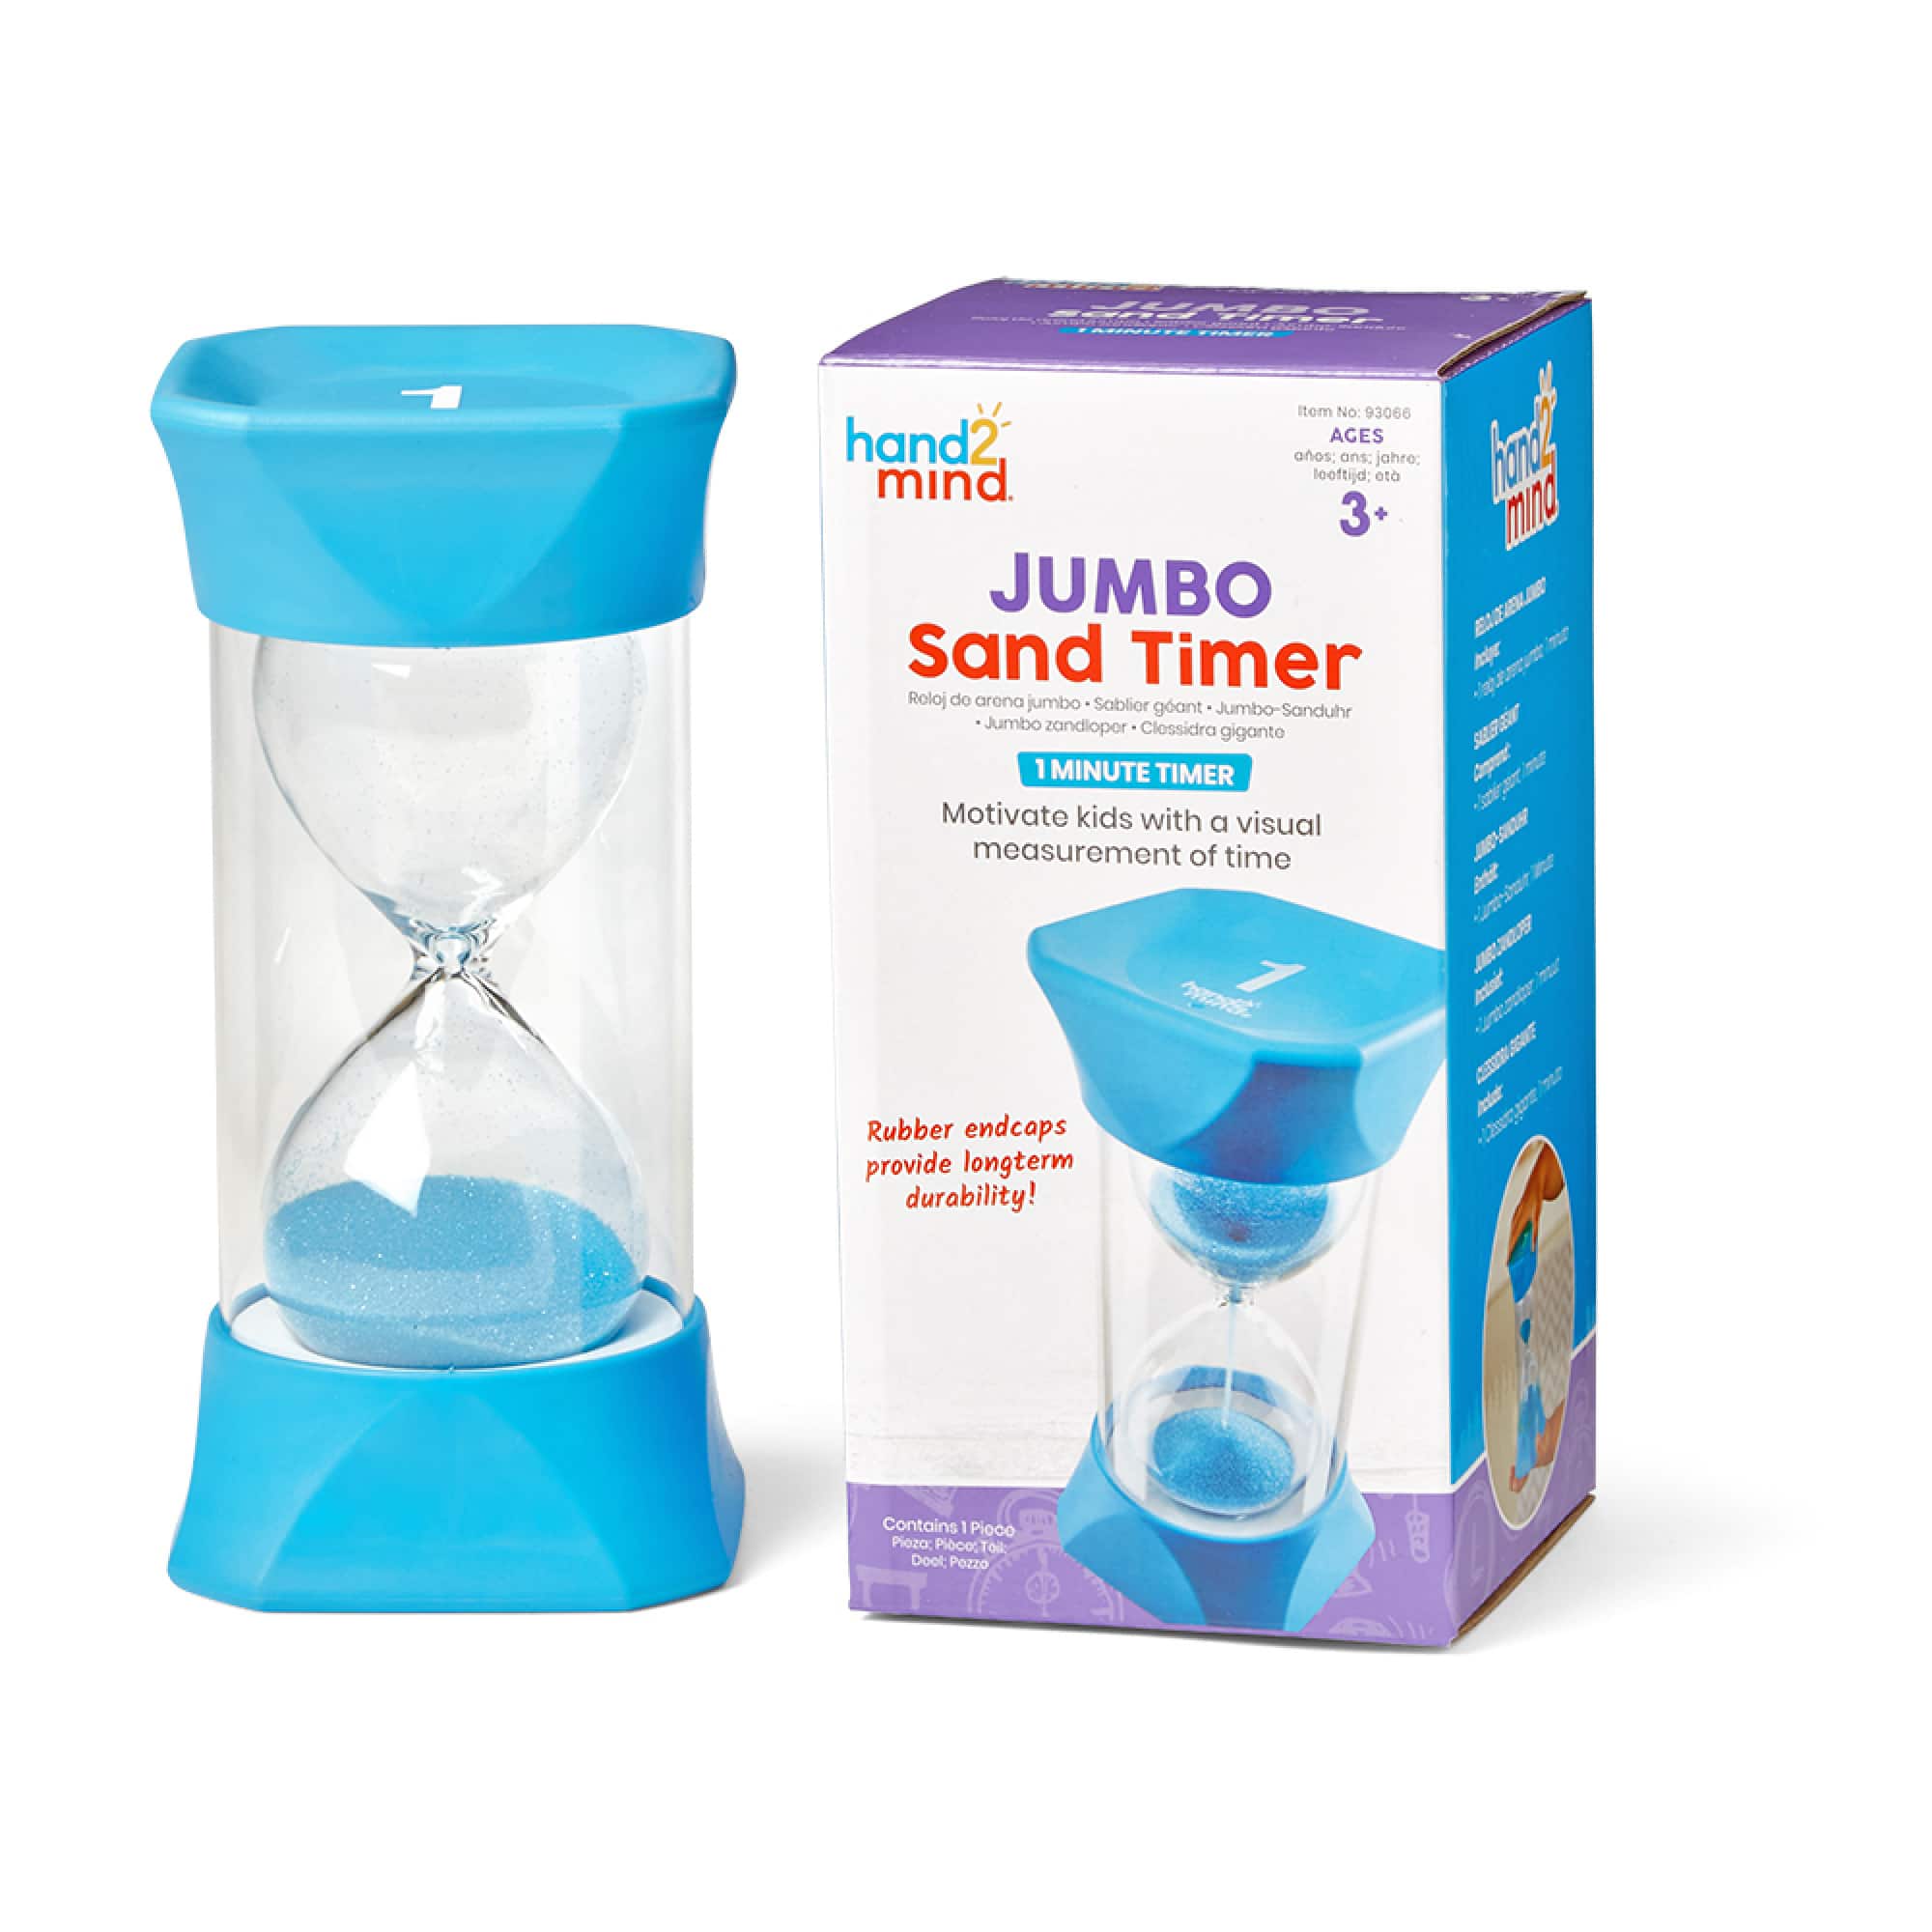 hand2mind&#xAE; Jumbo 1-Minute Sand Timer